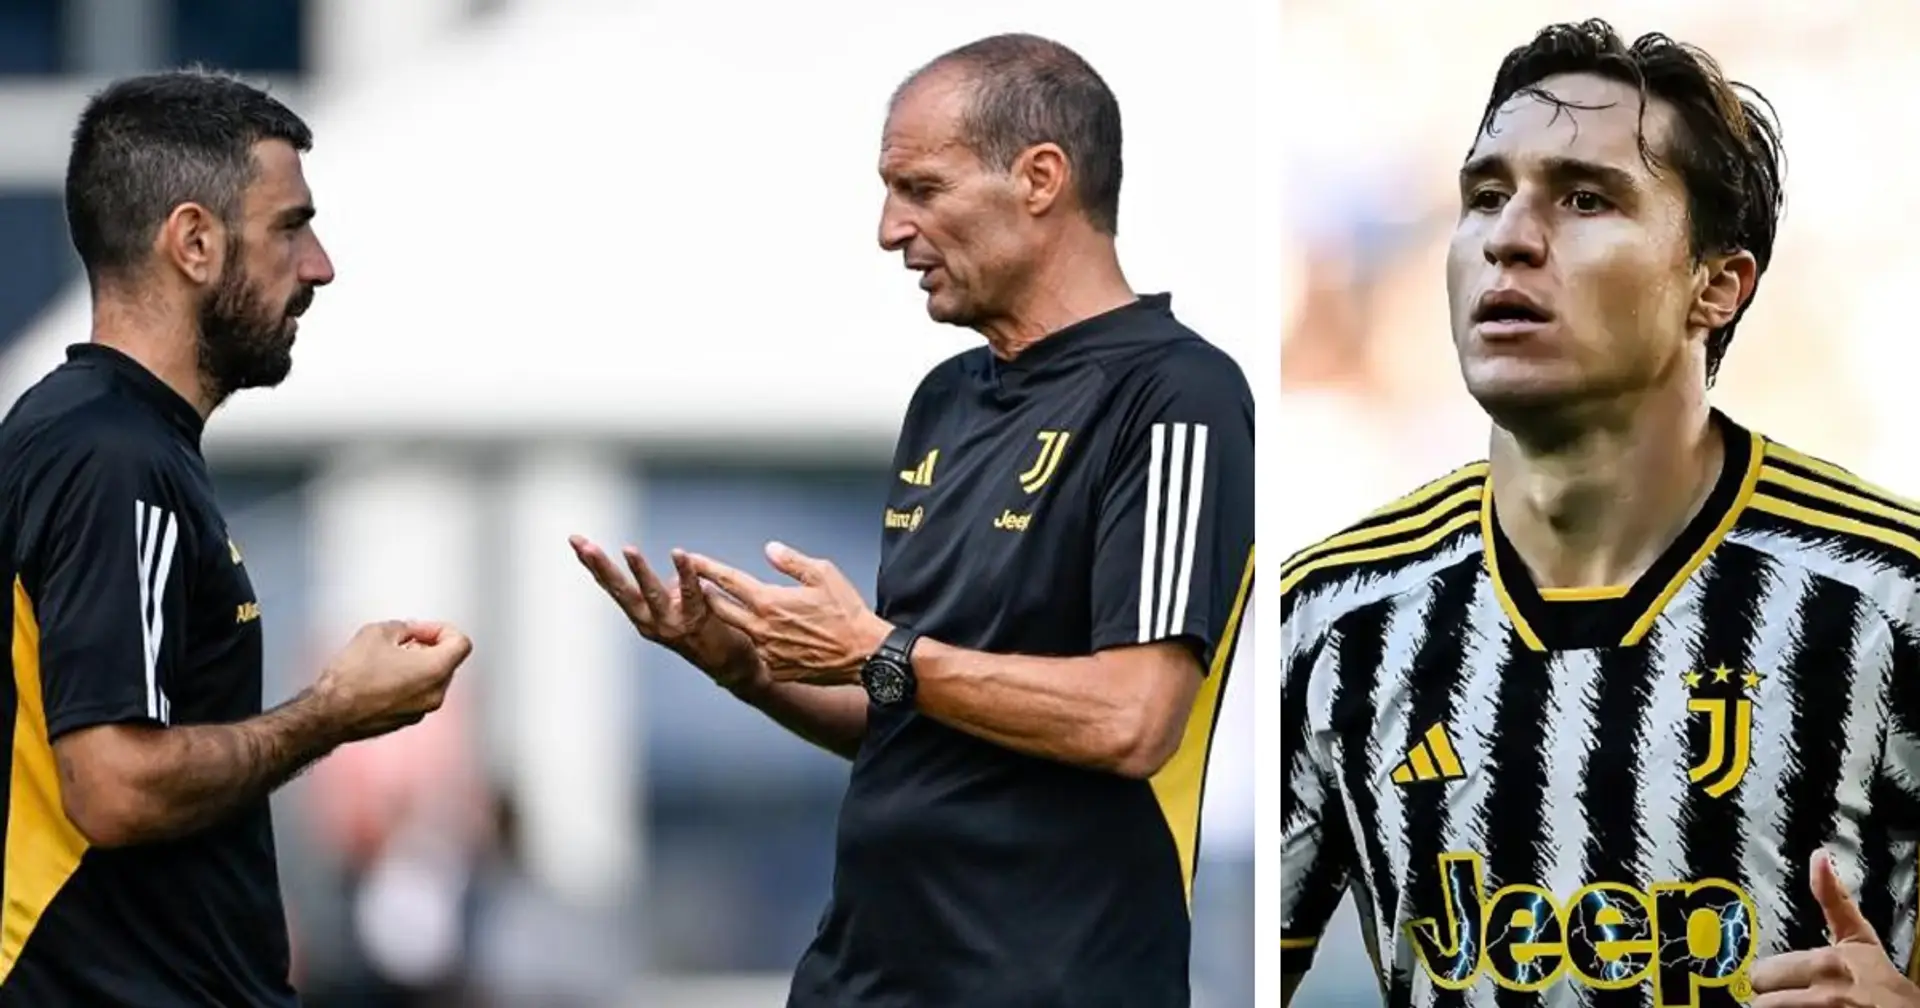 2 giocatori e i 'consigli' di Magnanelli per confermare la crescita: così la Juventus vuole prendersi il campionato